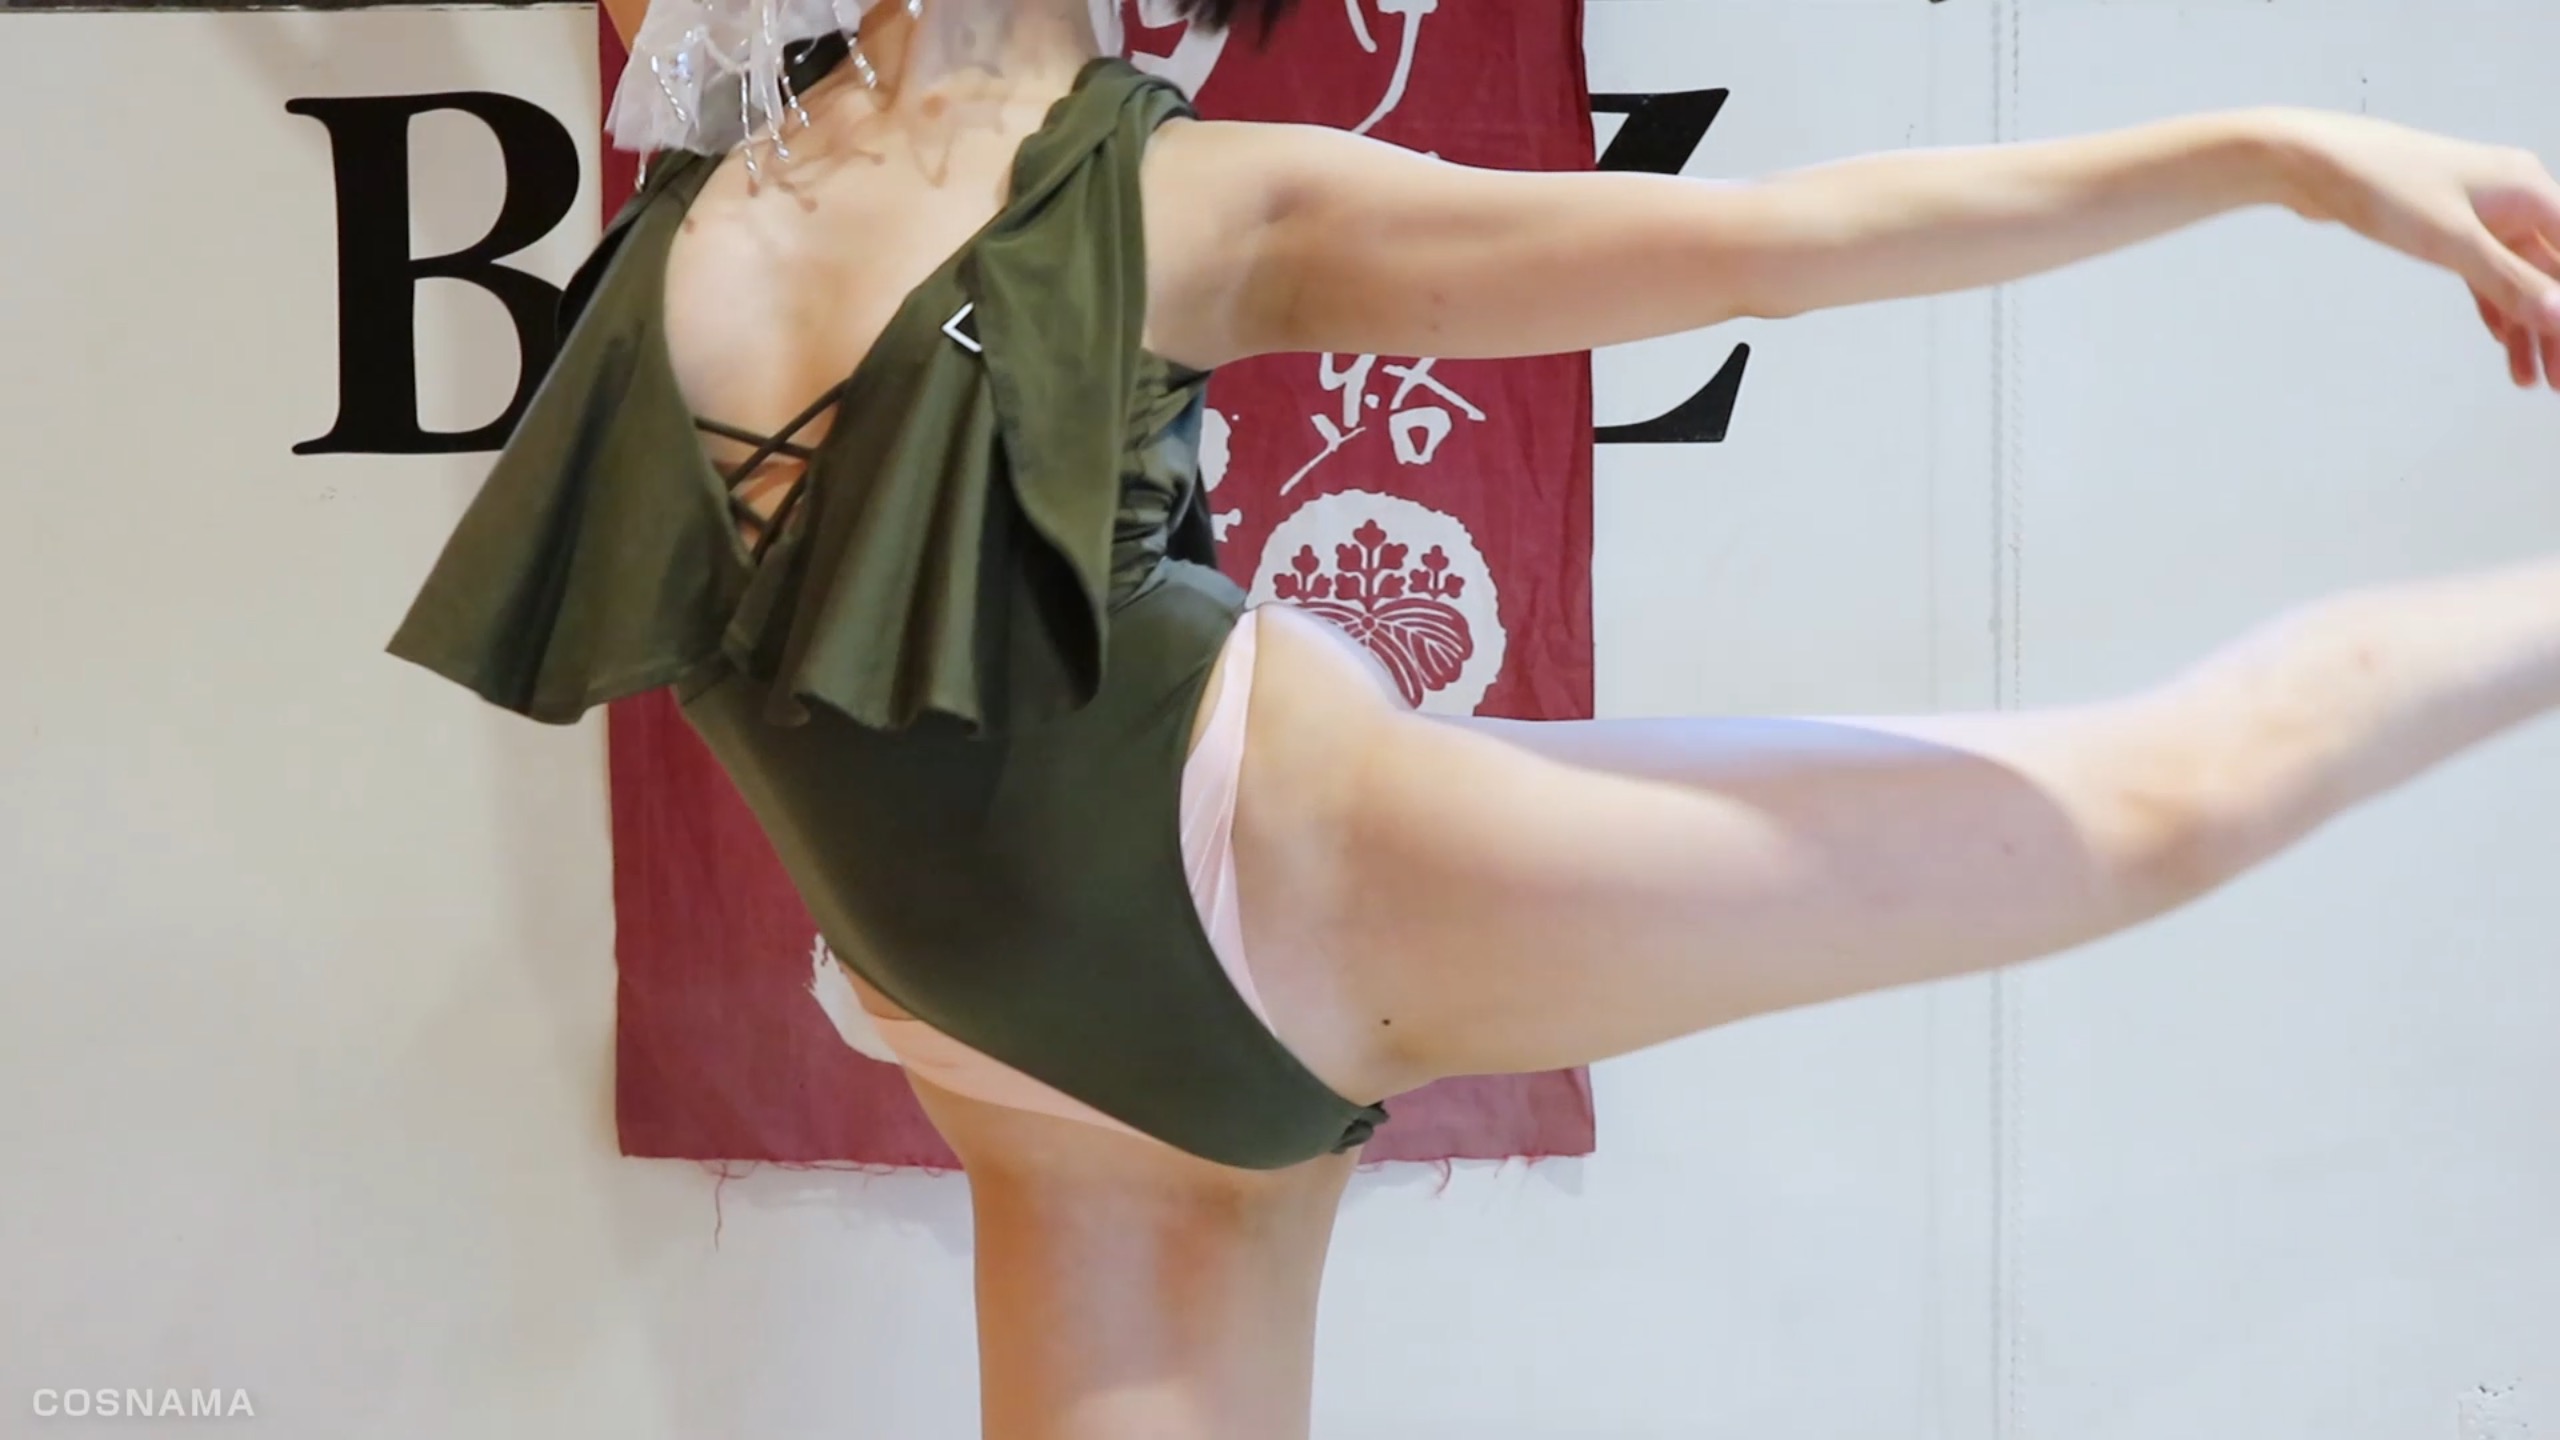 【ハプニング】JAZZダンス発表会でセクシー衣装がズレておっぱいポ口りしたダンサー 画像つき詳細レビュー